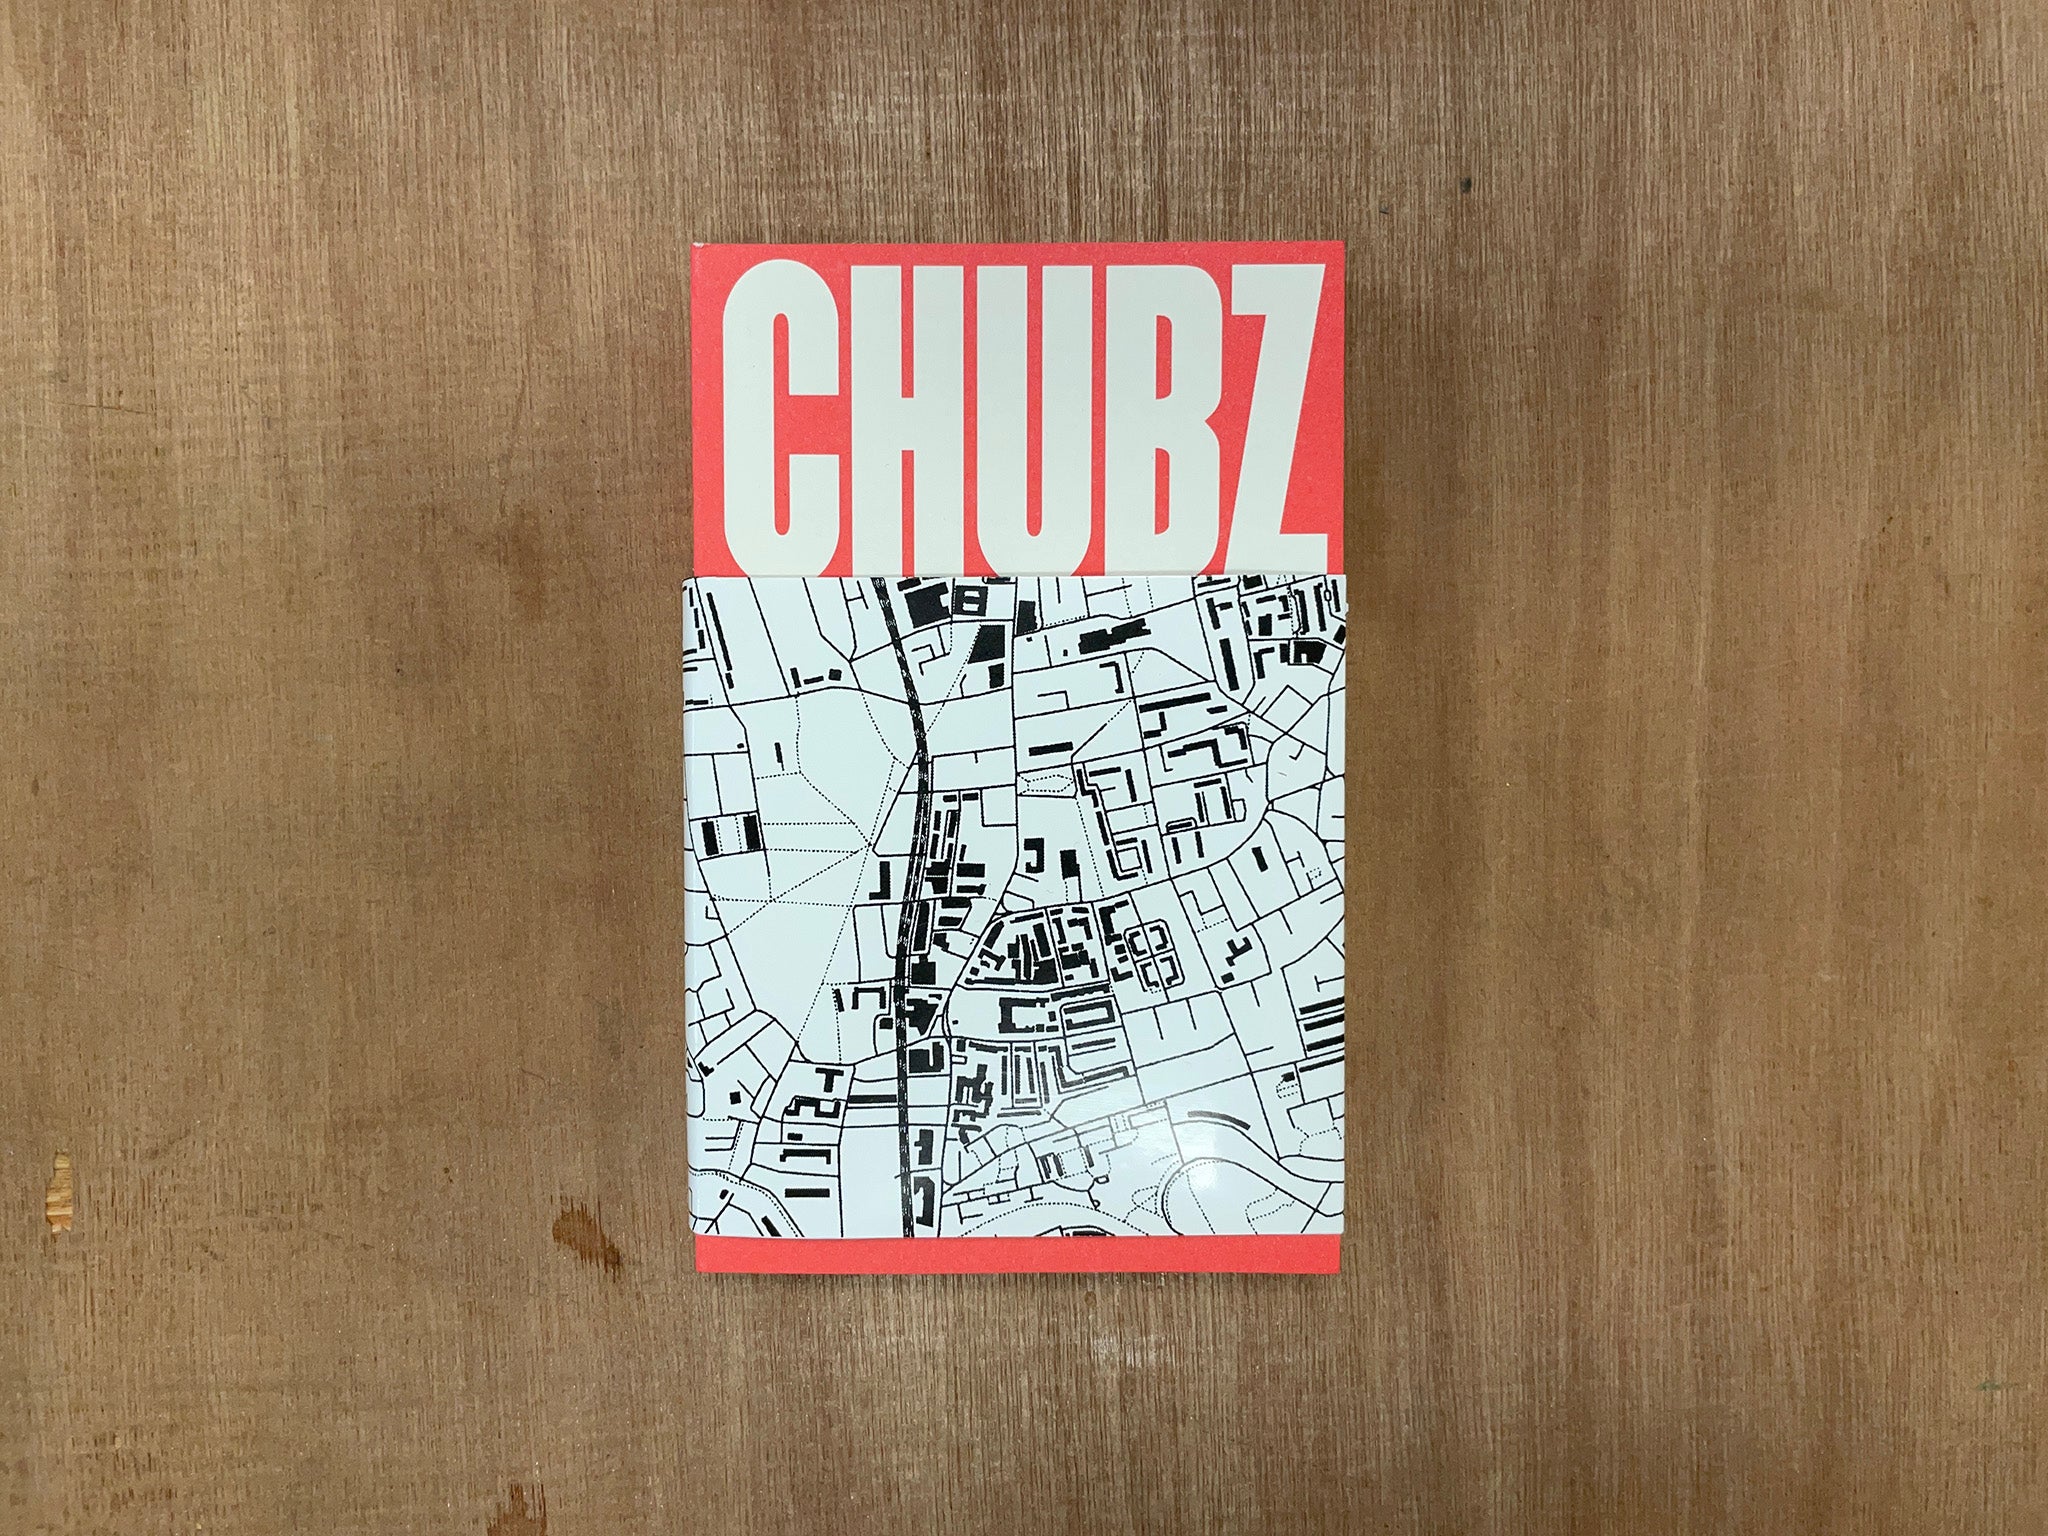 CHUBZ: THE DEMONIZATION OF MY WORKING ARSE by Spitzenprodukte